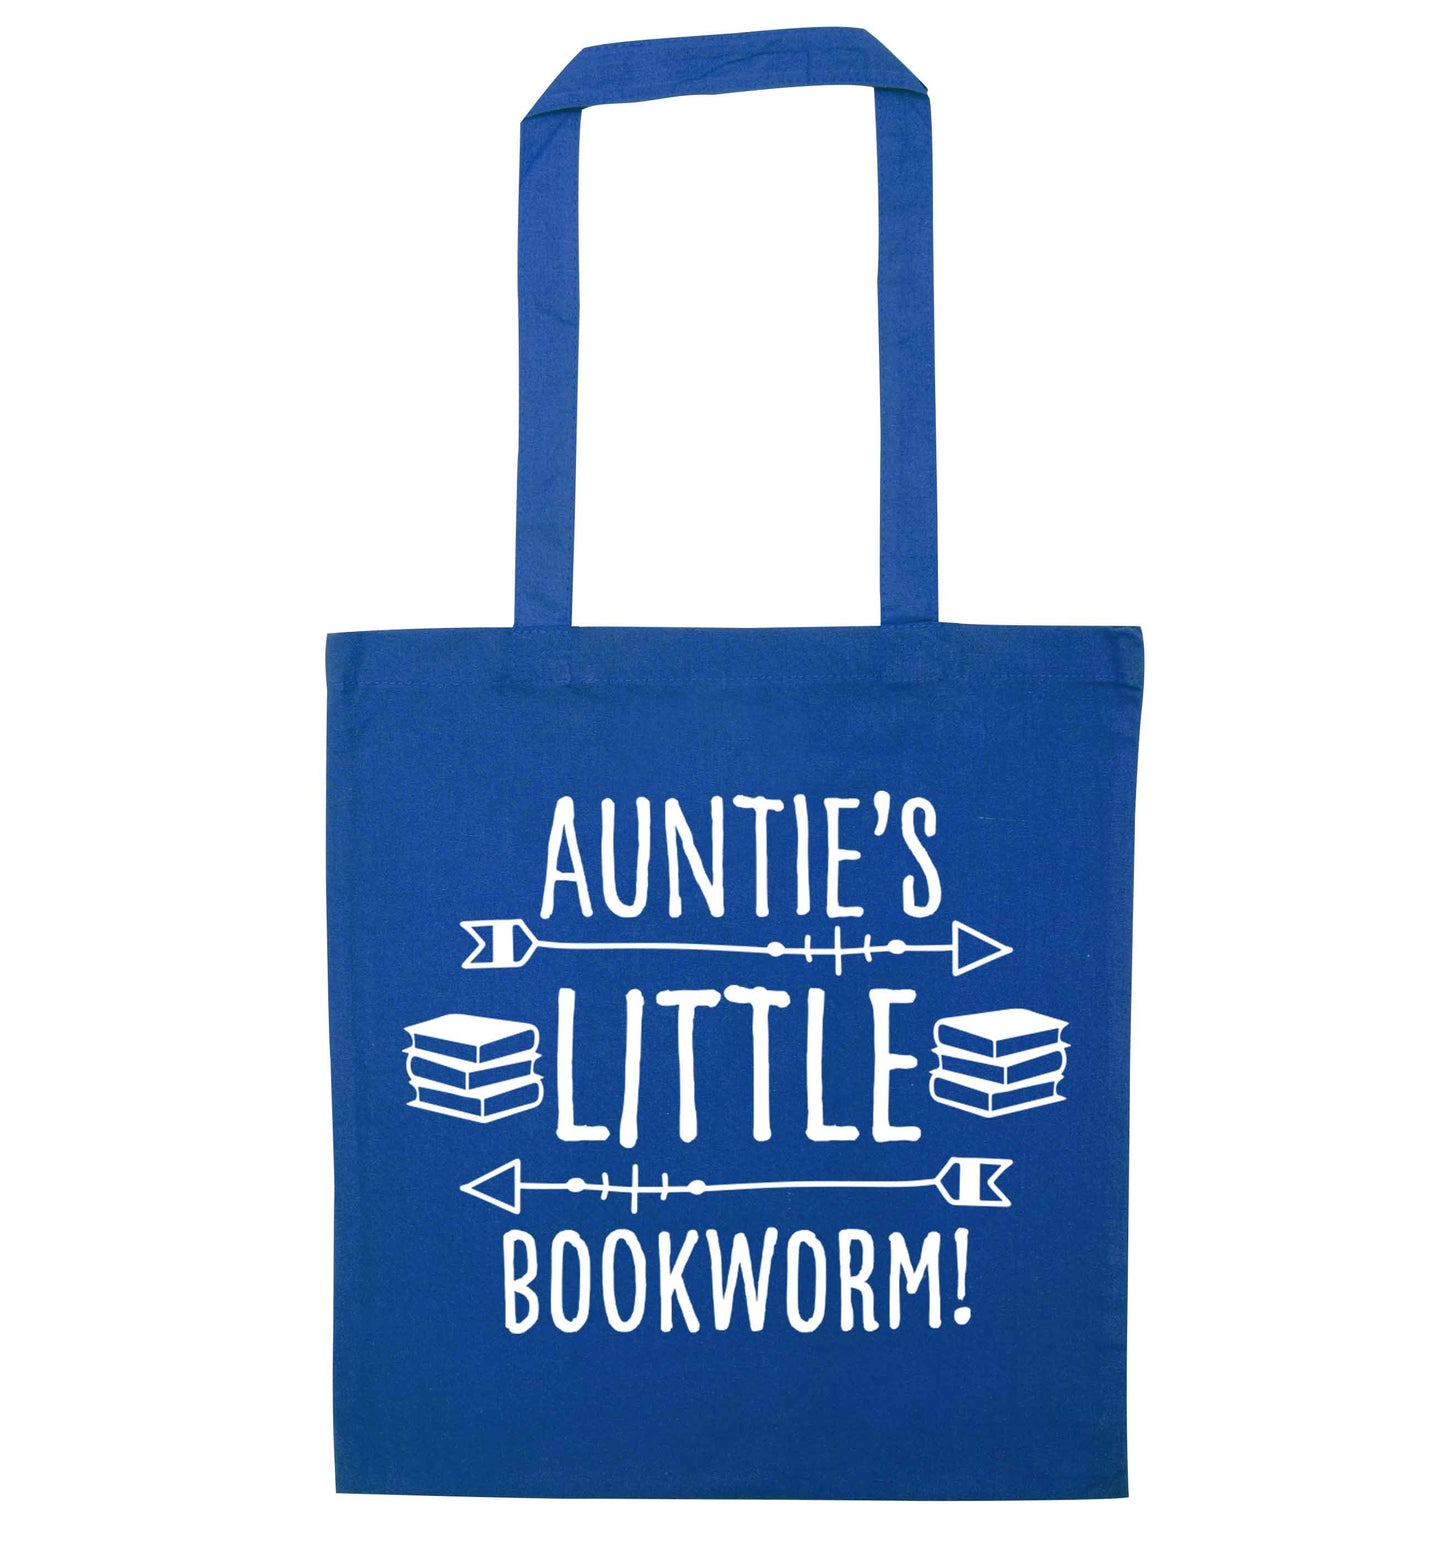 Auntie's little bookworm blue tote bag